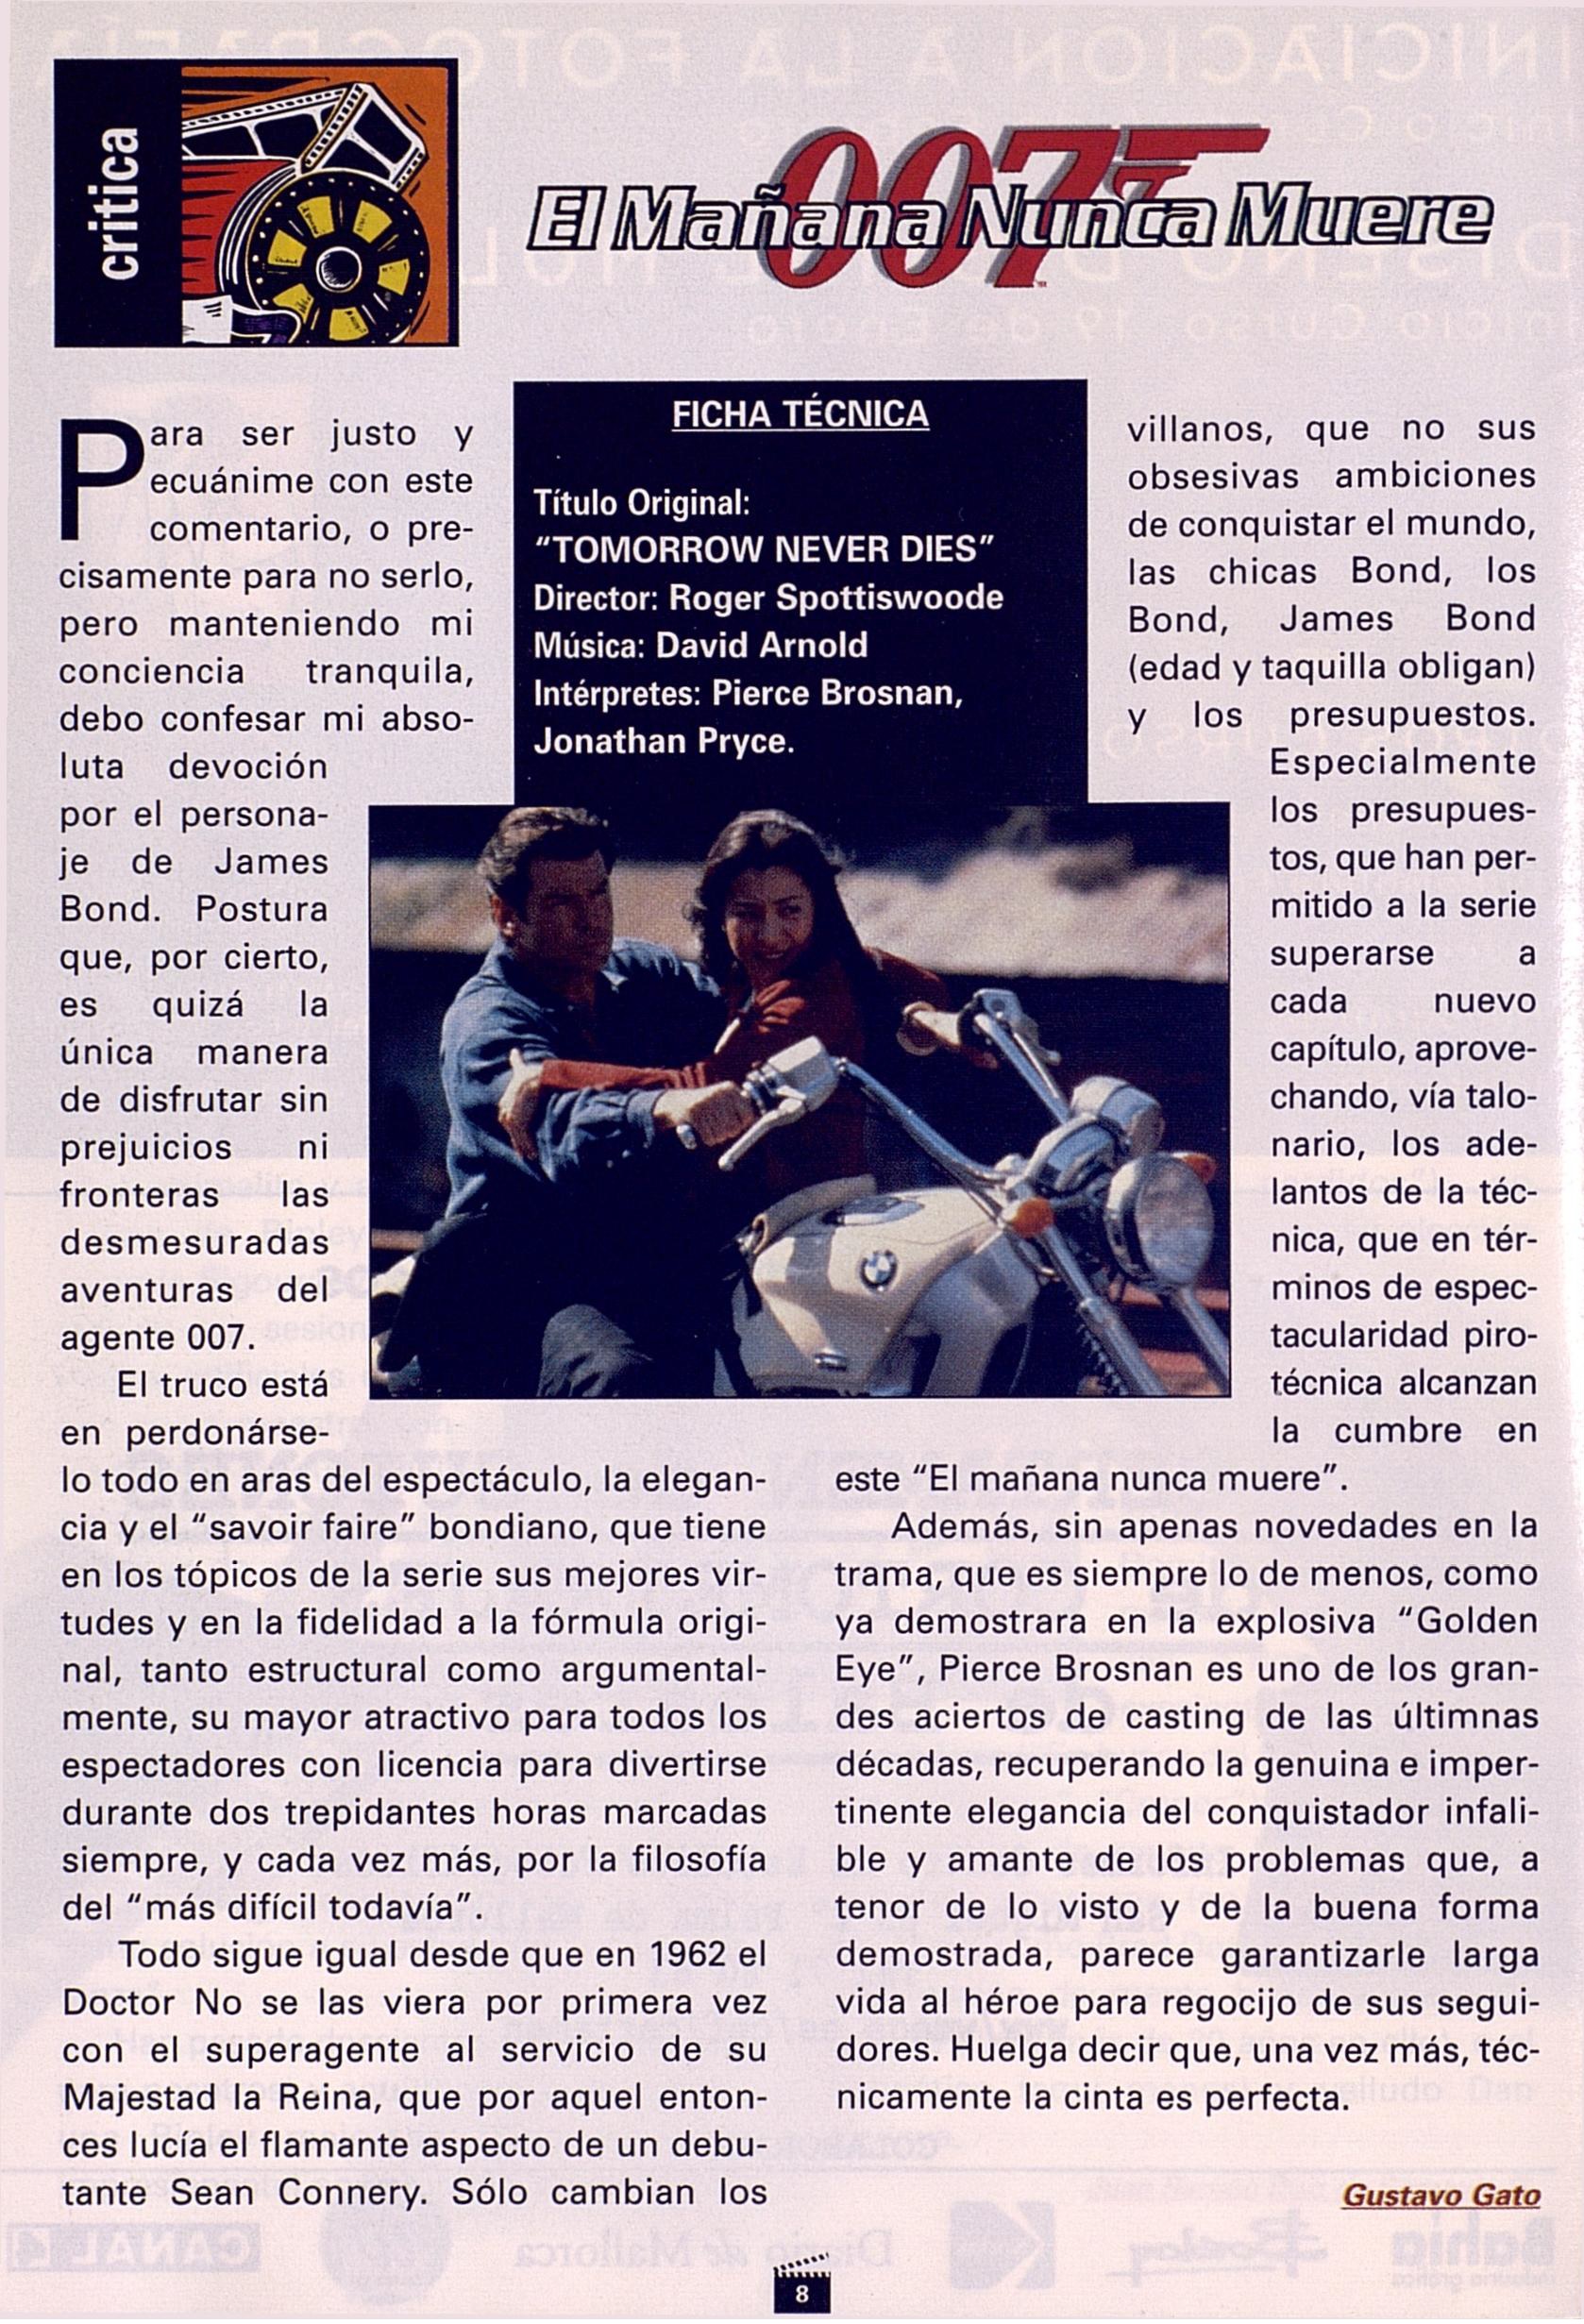 18 1998 01 01 Fan del Cine Palma de Mallorca No017 08 Critica